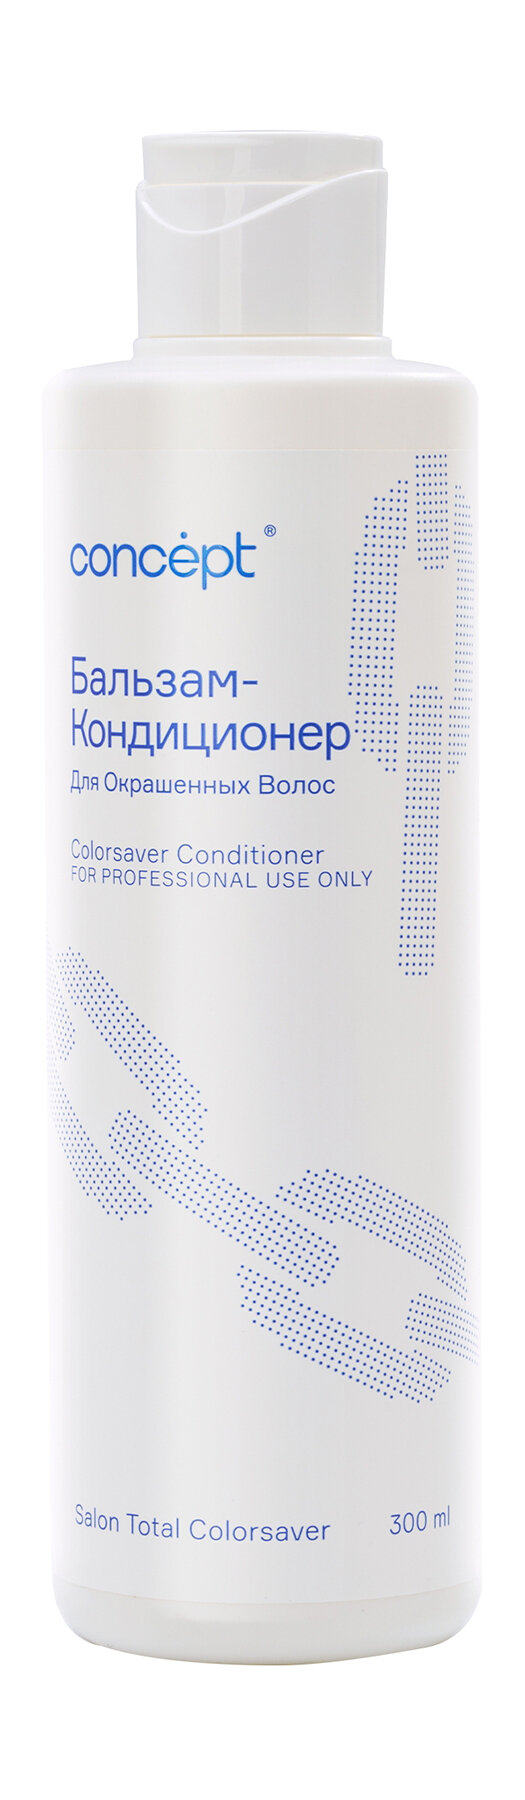 CONCEPT Бальзам-кондиционер для окрашенных волос Сolorsaver Conditioner, 300 мл